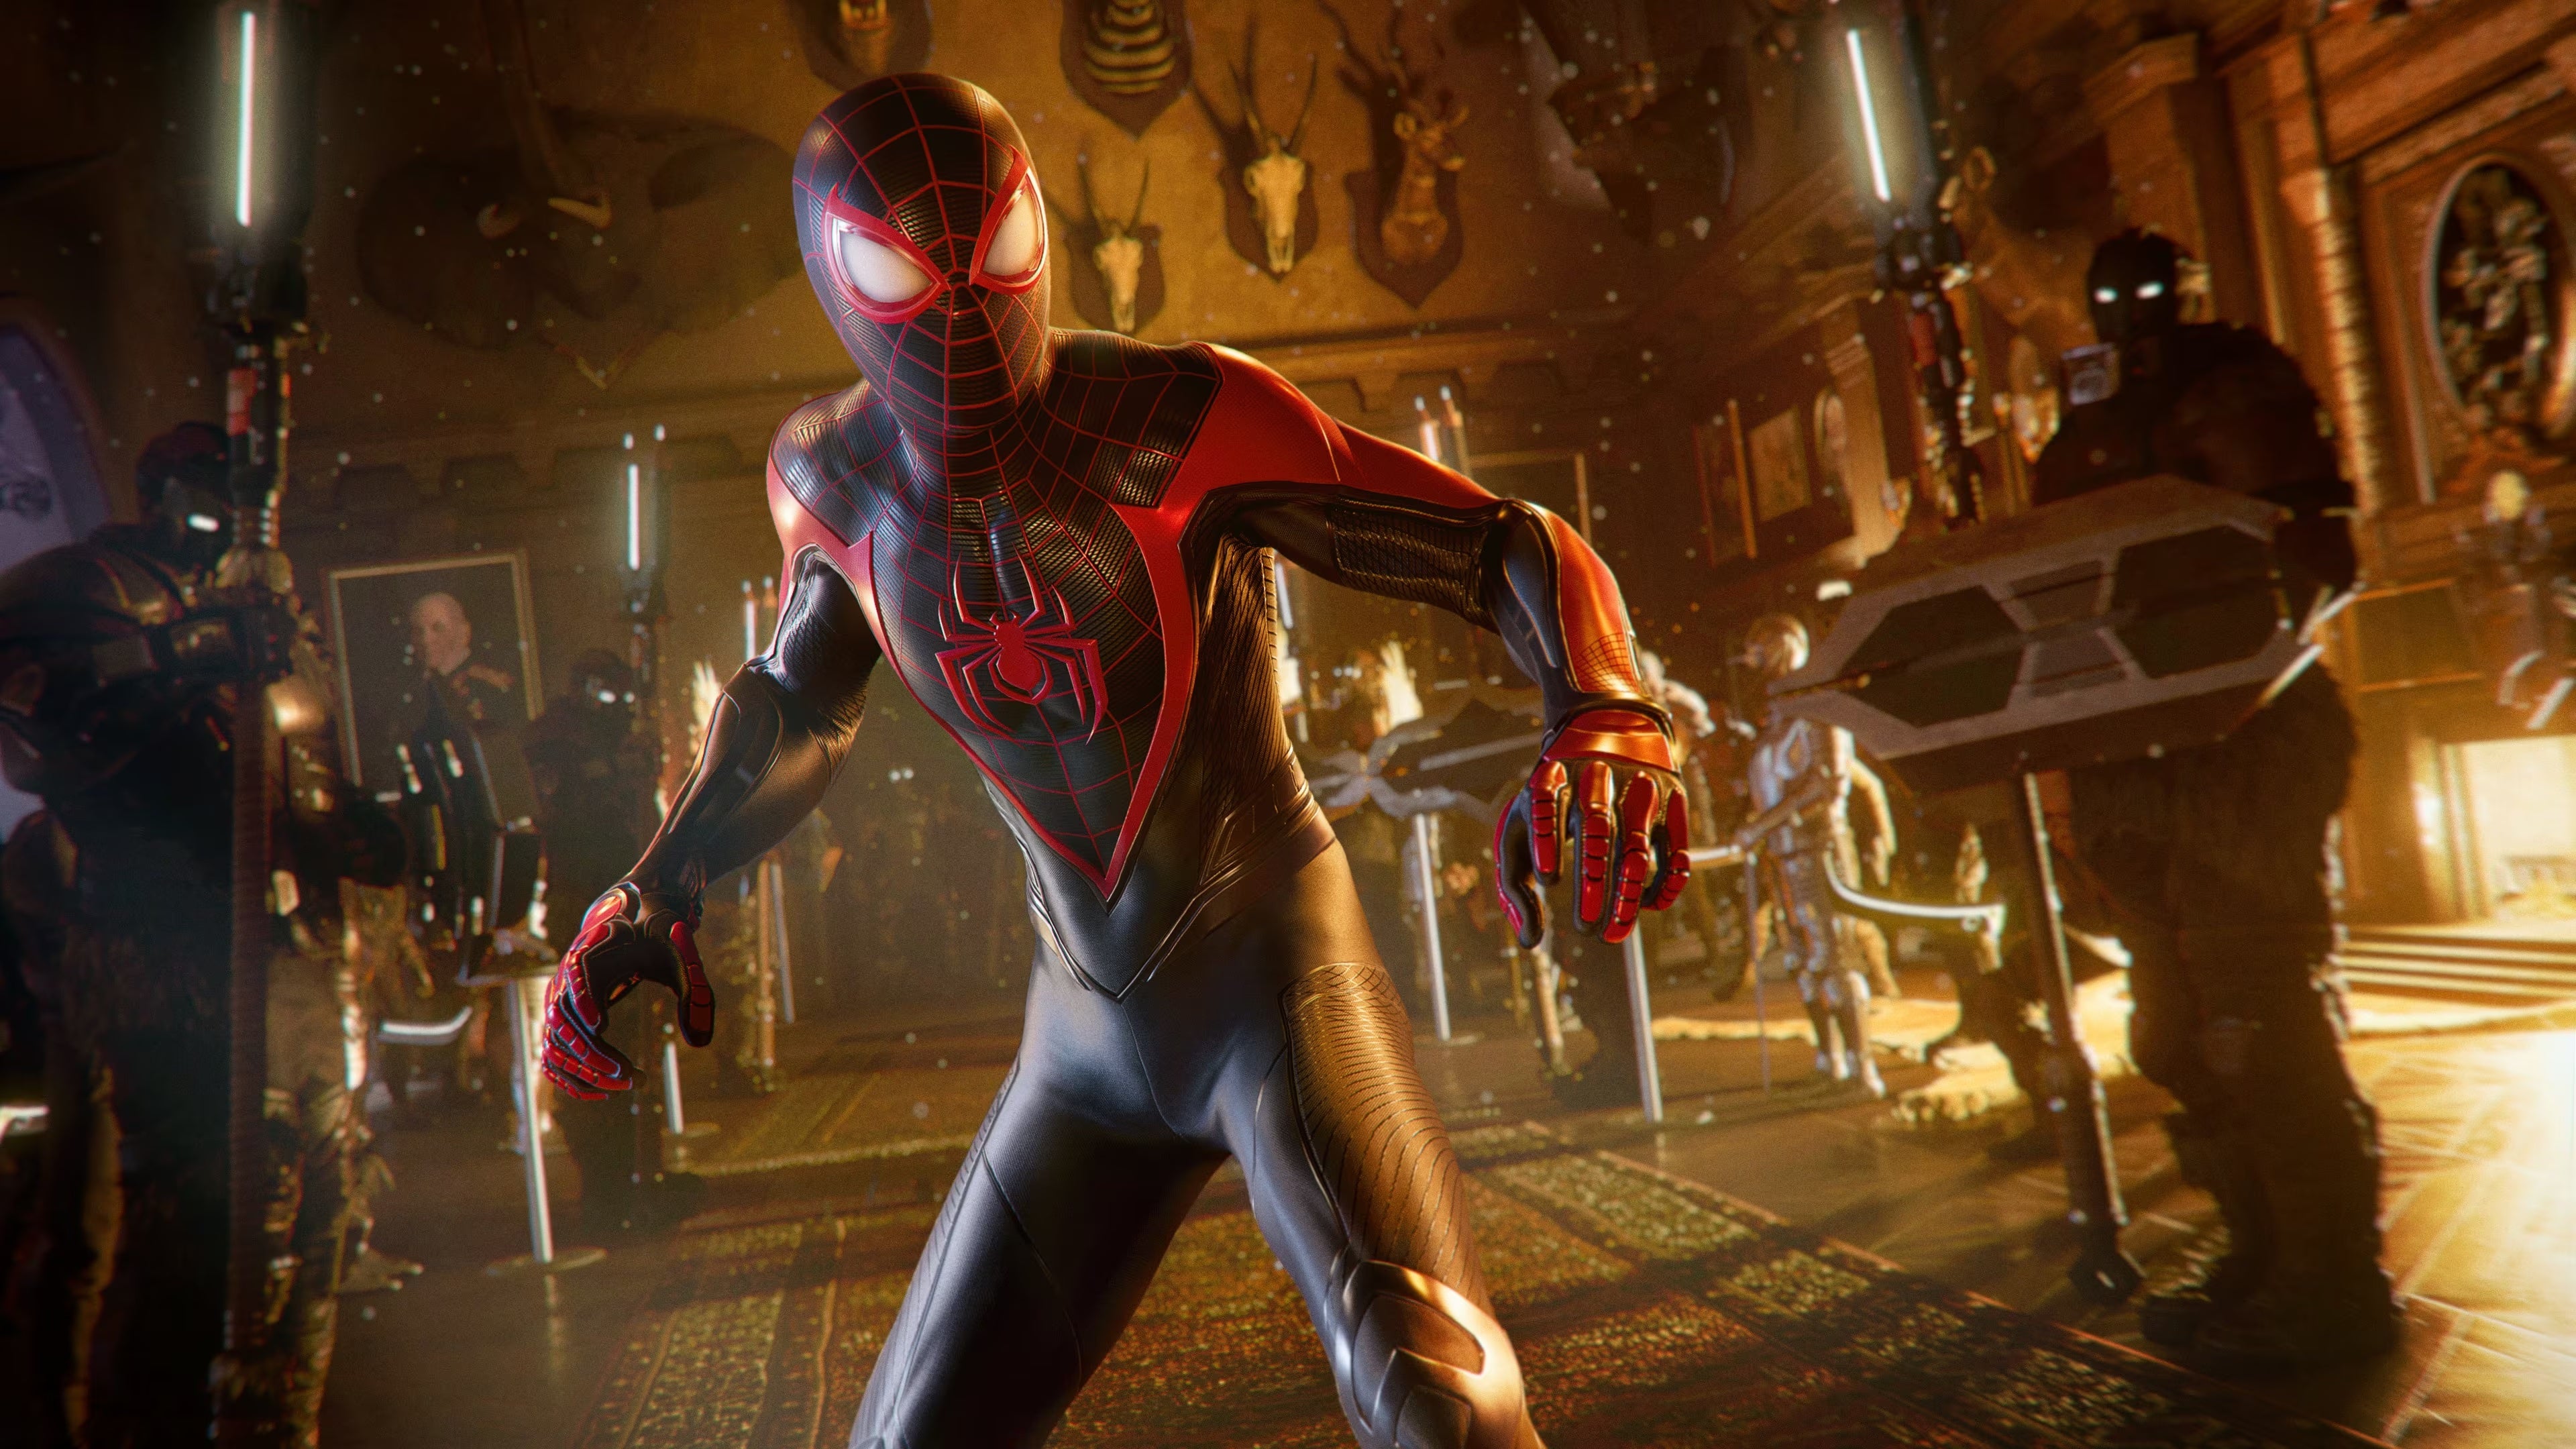 PS5 Slim Holiday Bundles For $499 - Get Spider-Man 2 Or Modern